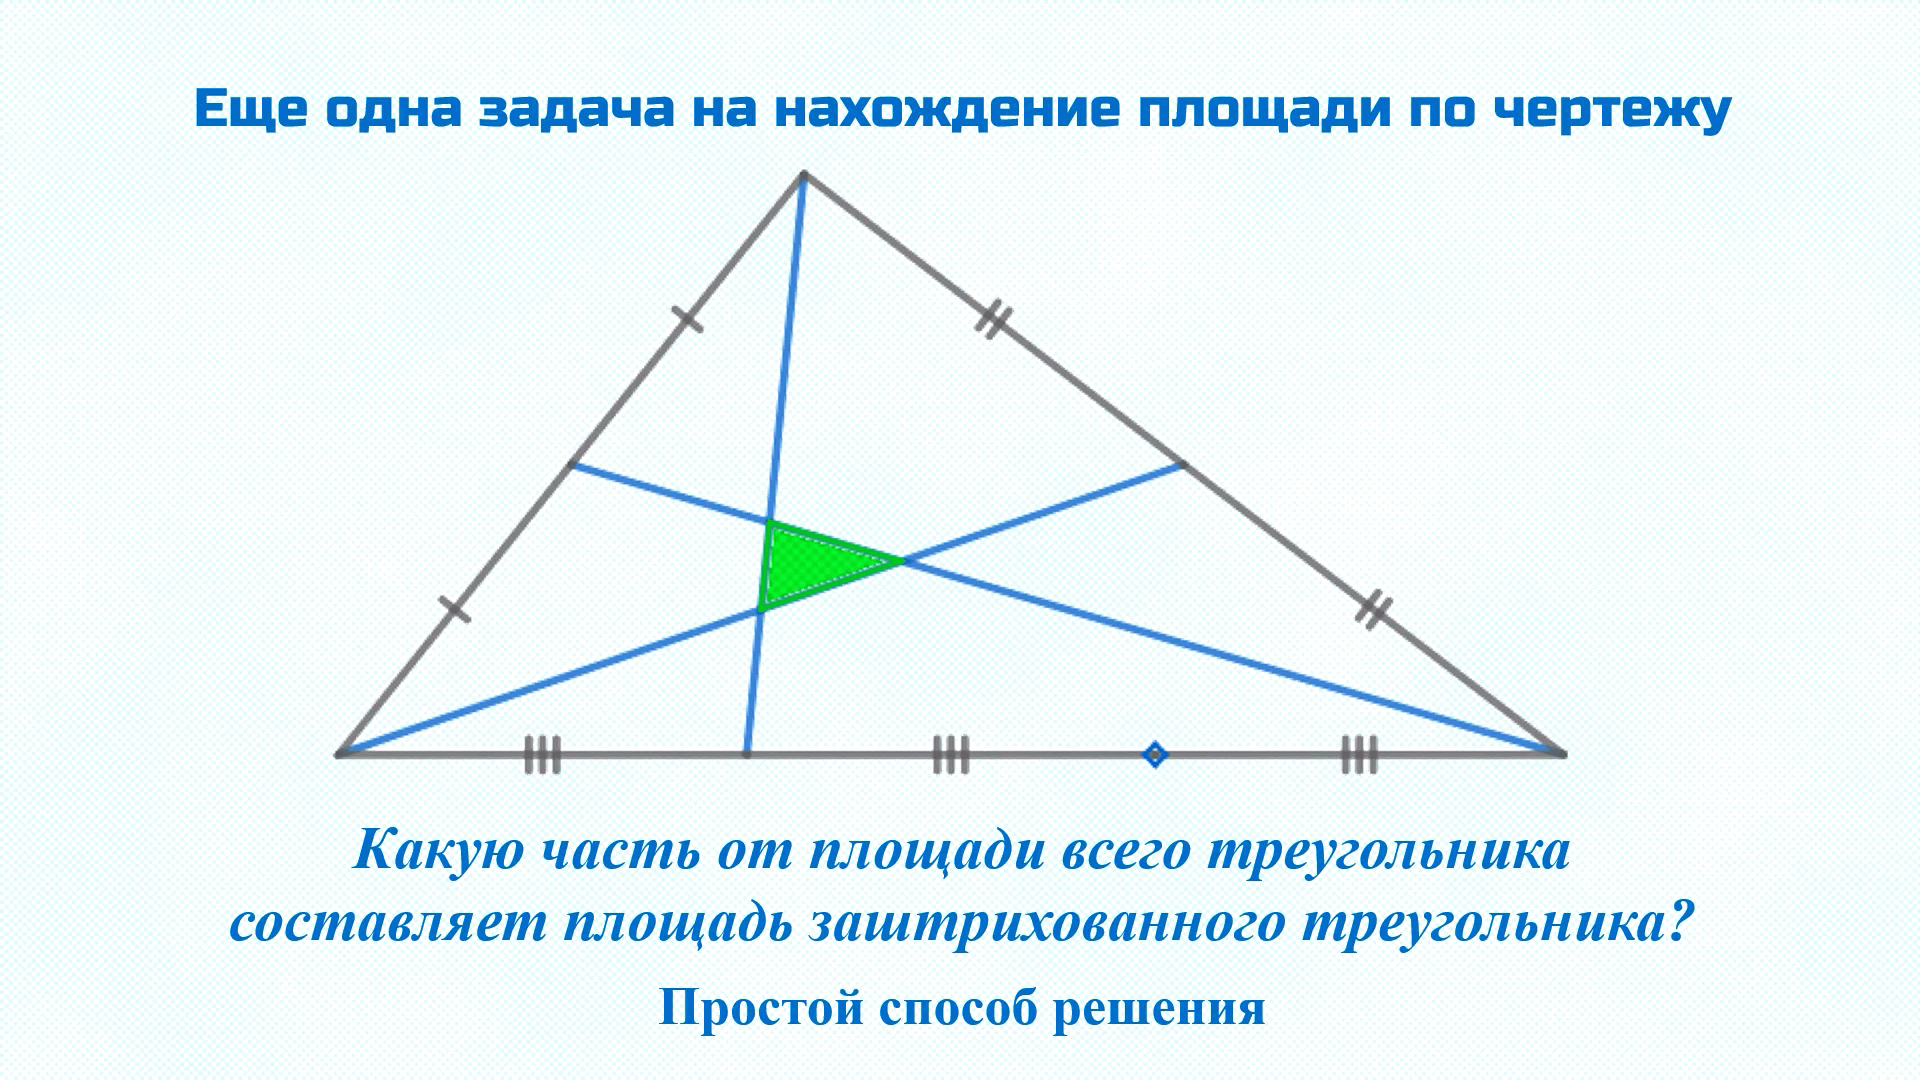 Периметр равнобедренного тупоугольного треугольника равен 108 м. Равносторонний тупоугольный треугольник. Медиана тупоугольного треугольника. Биссектриса тупоугольного треугольника. Площадь тупоугольного треугольника.